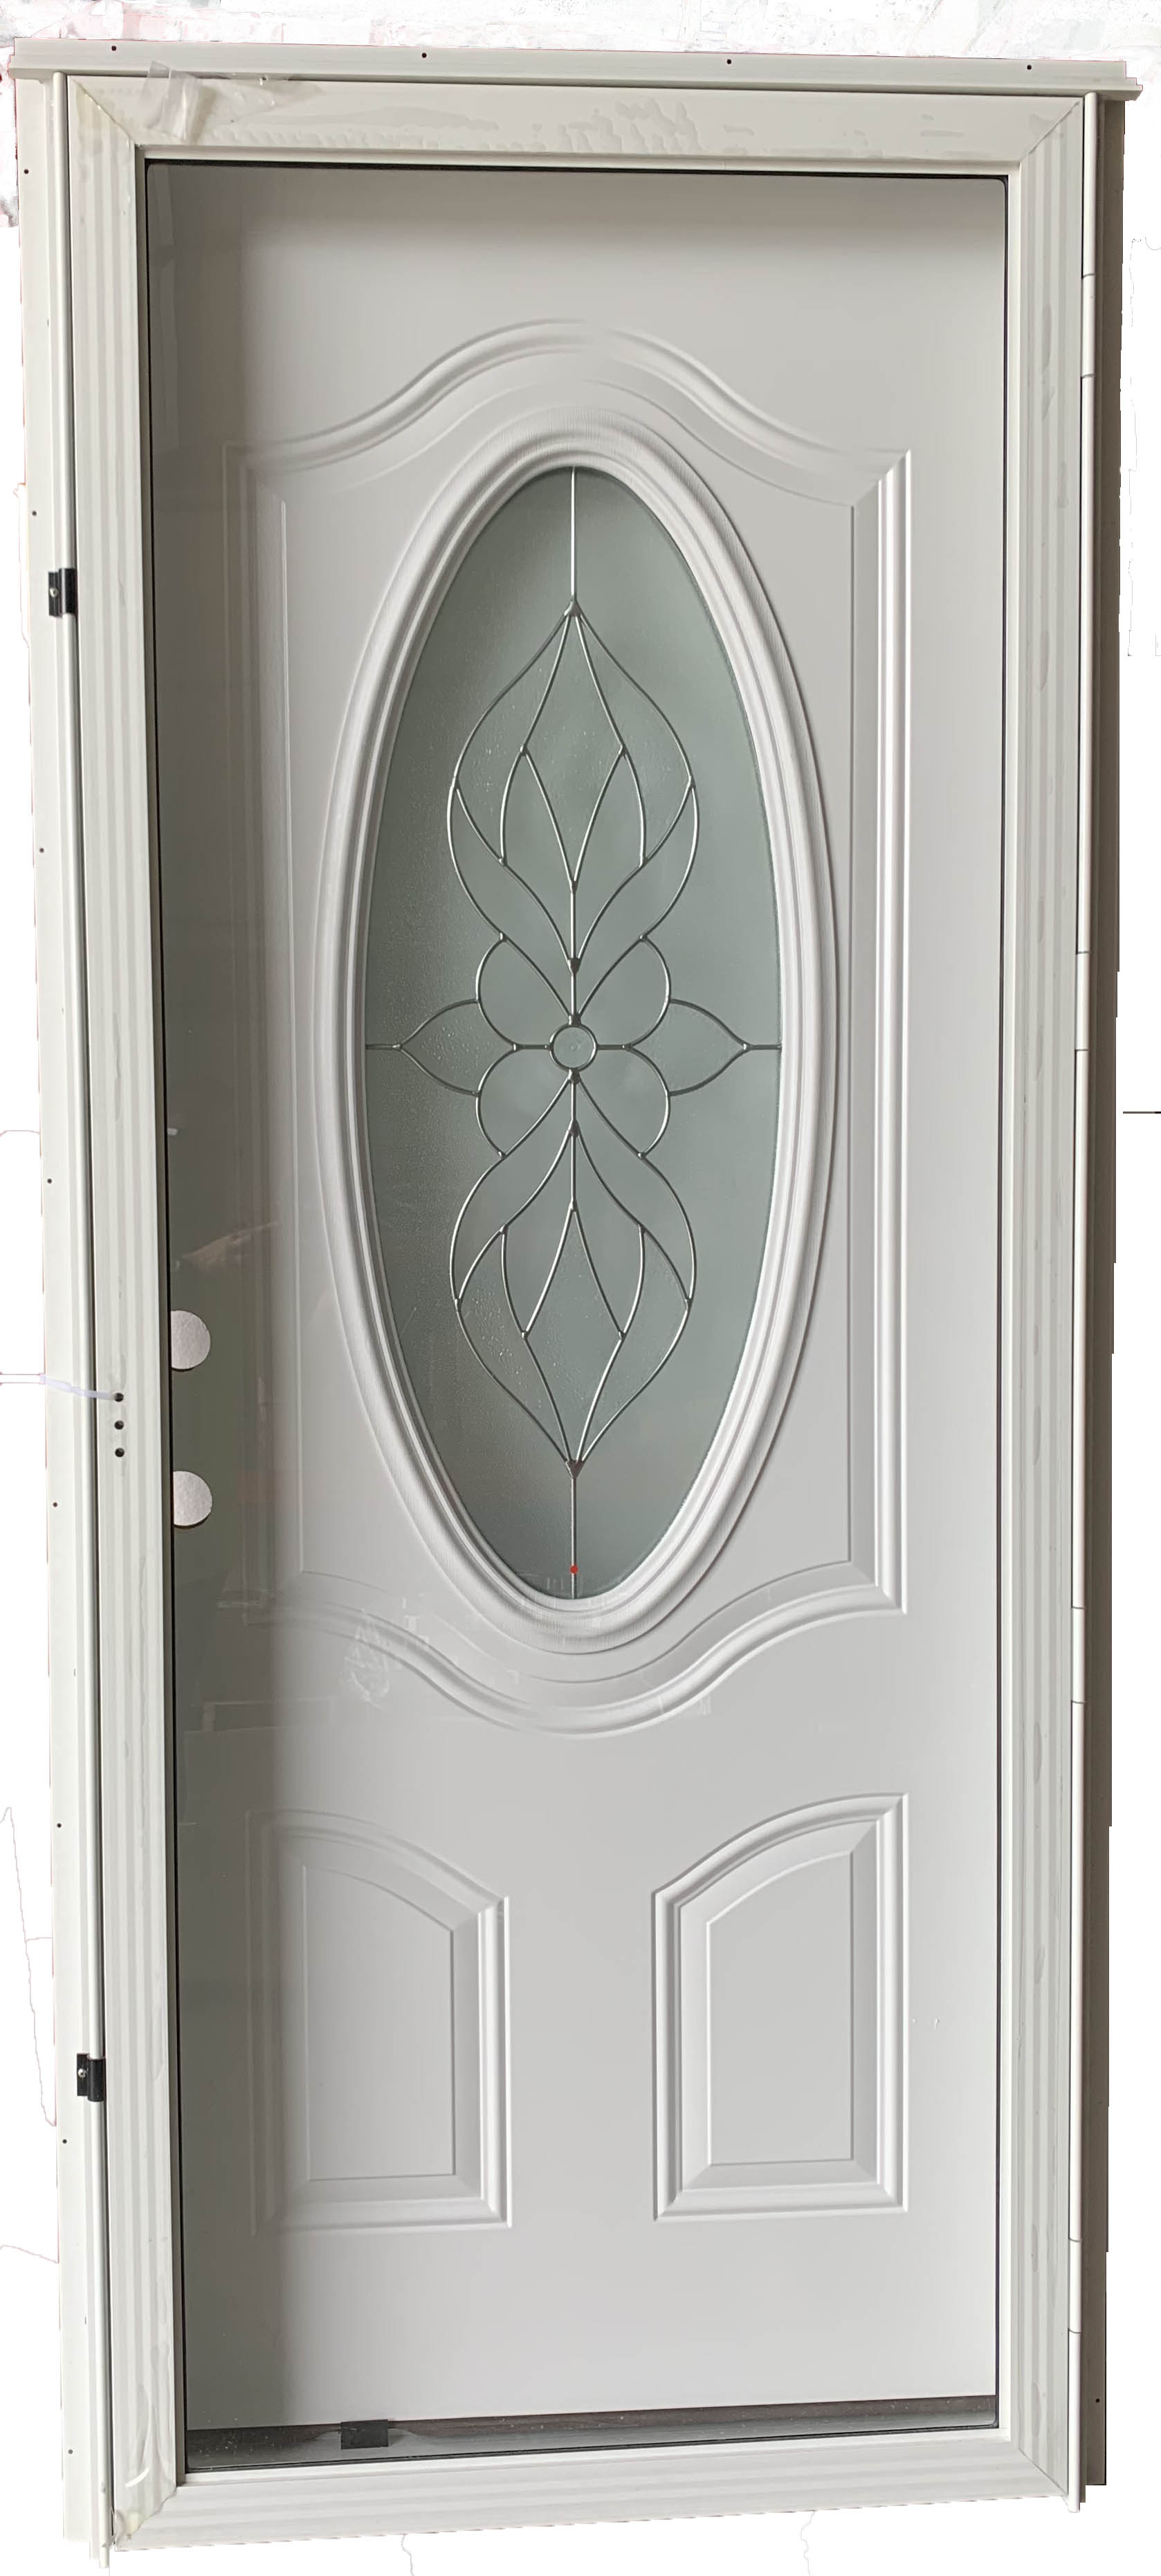 Six Panel Steel Combination Door With 3/4 Oval Window And Full View Storm  Door